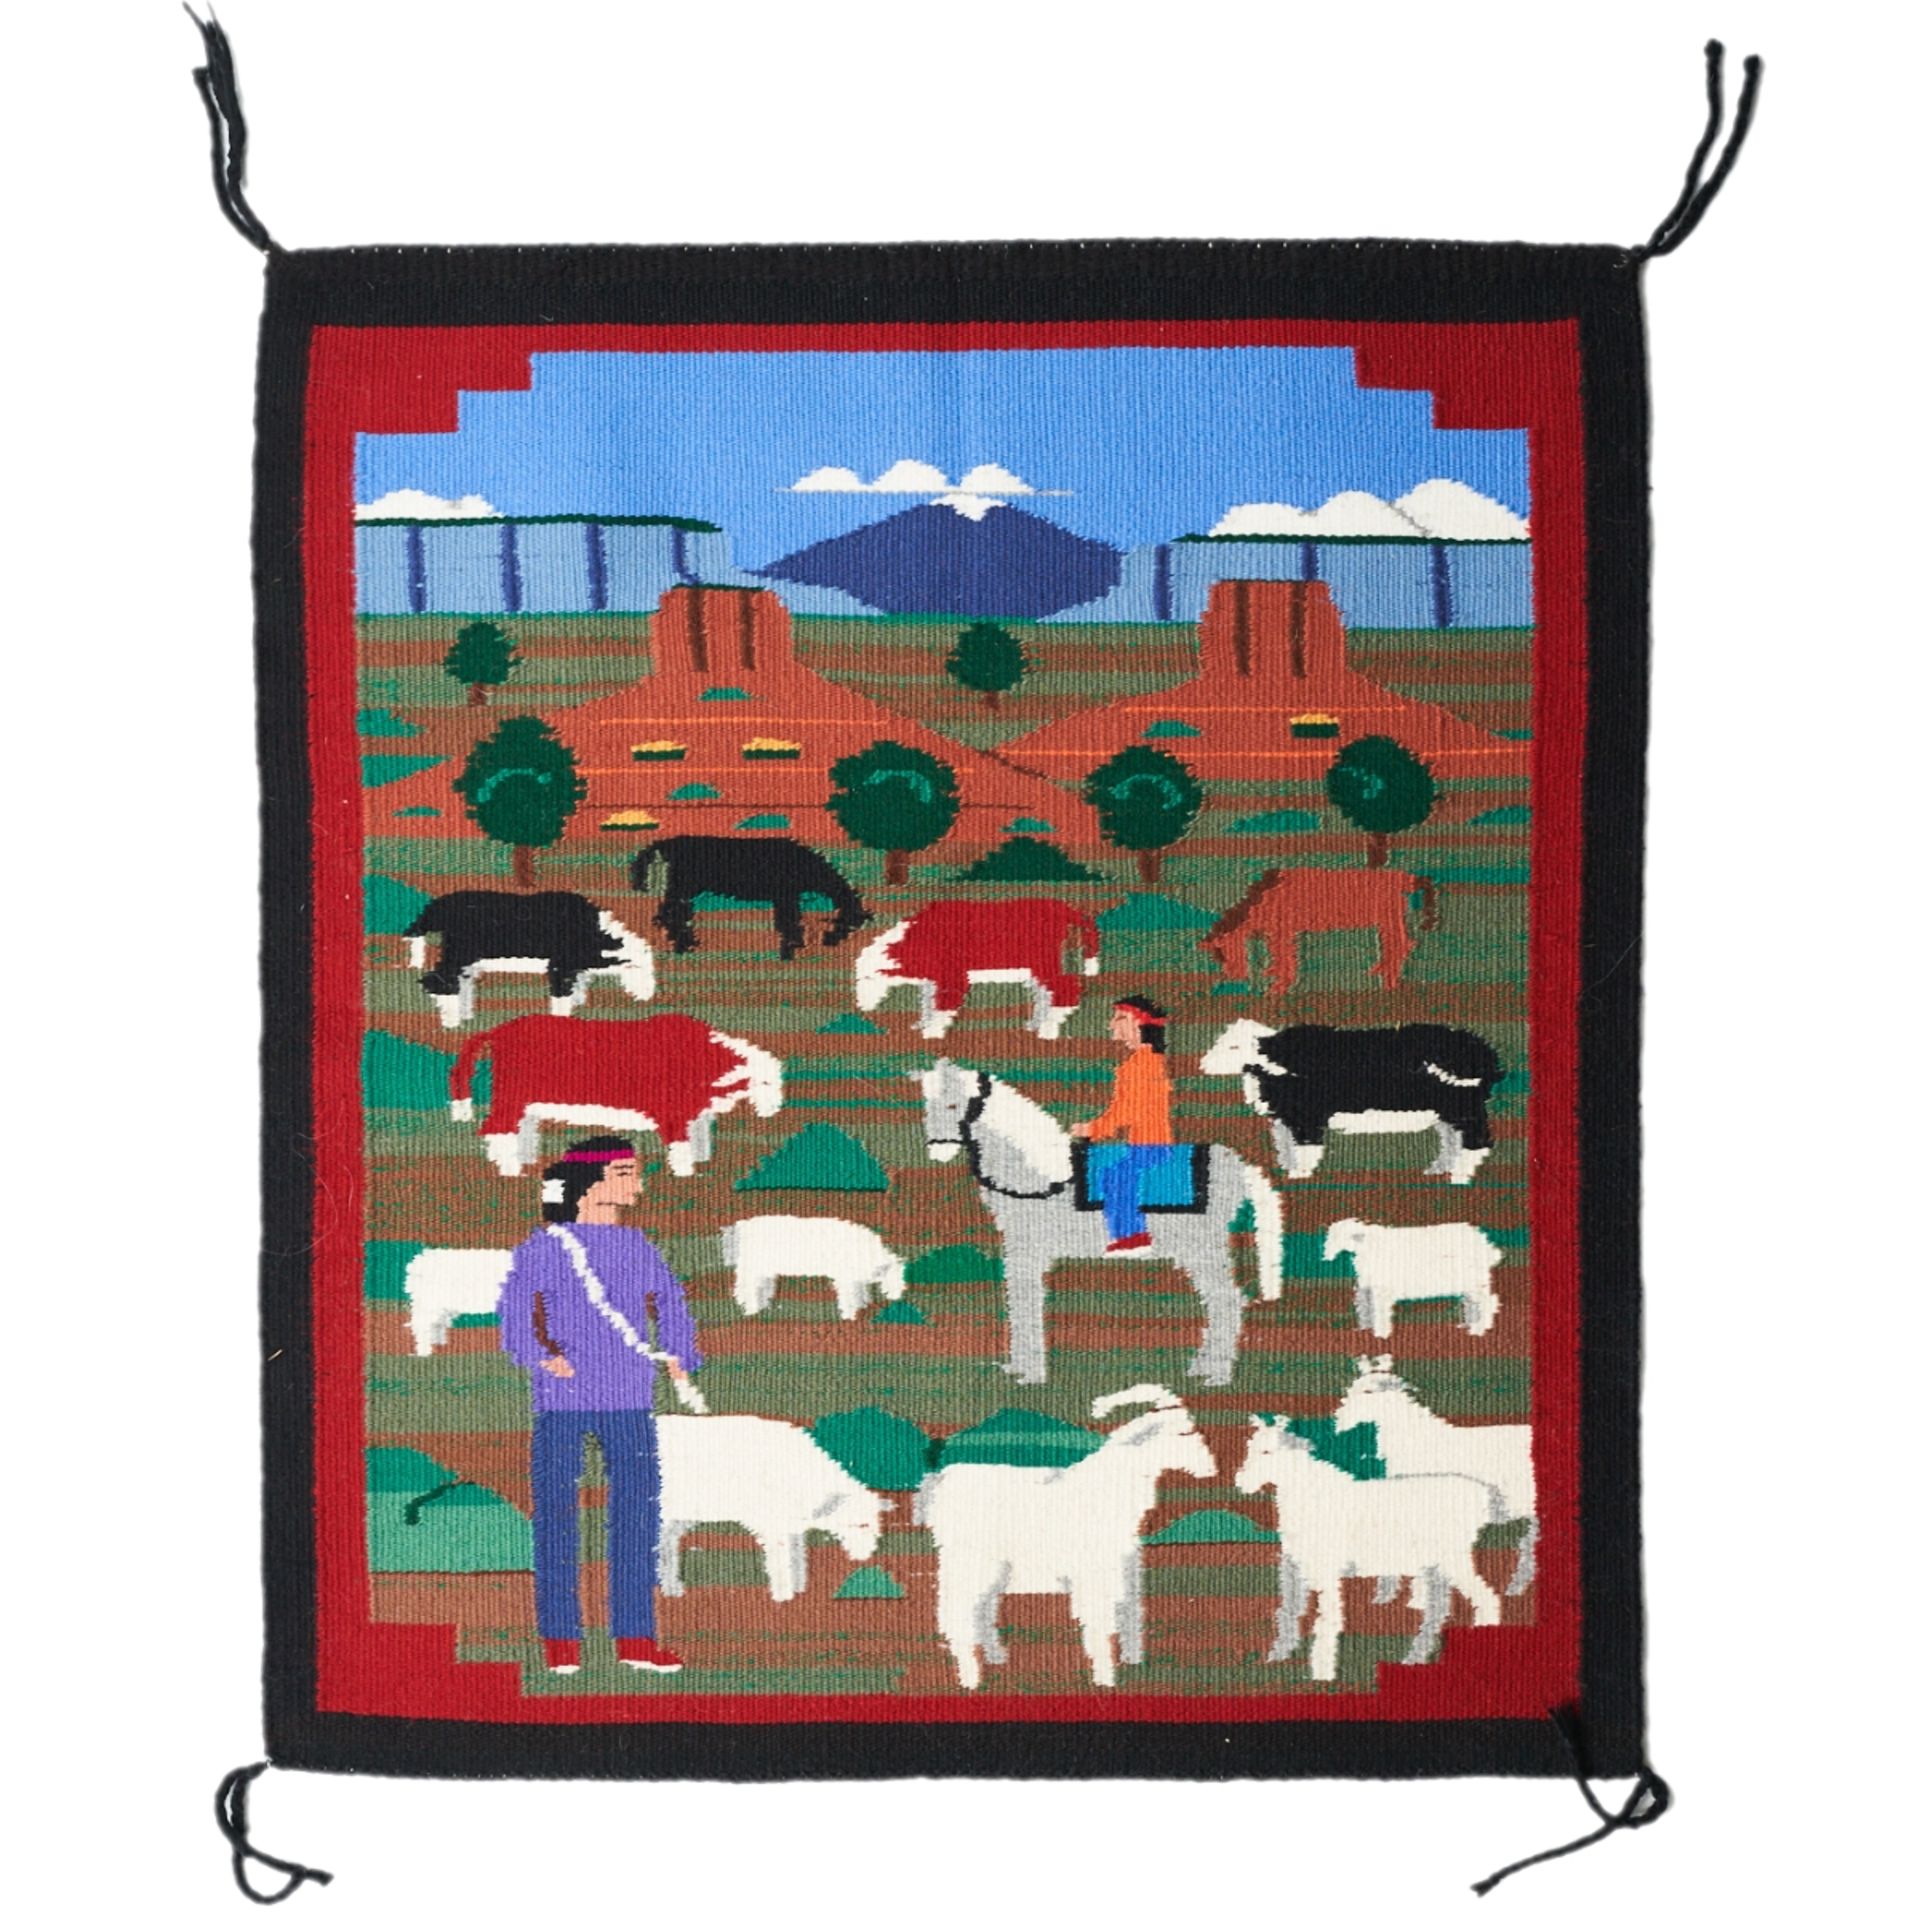 Pictorial Navajo Rug Weaving Blanket Prairie Farm Scene - Image 4 of 4